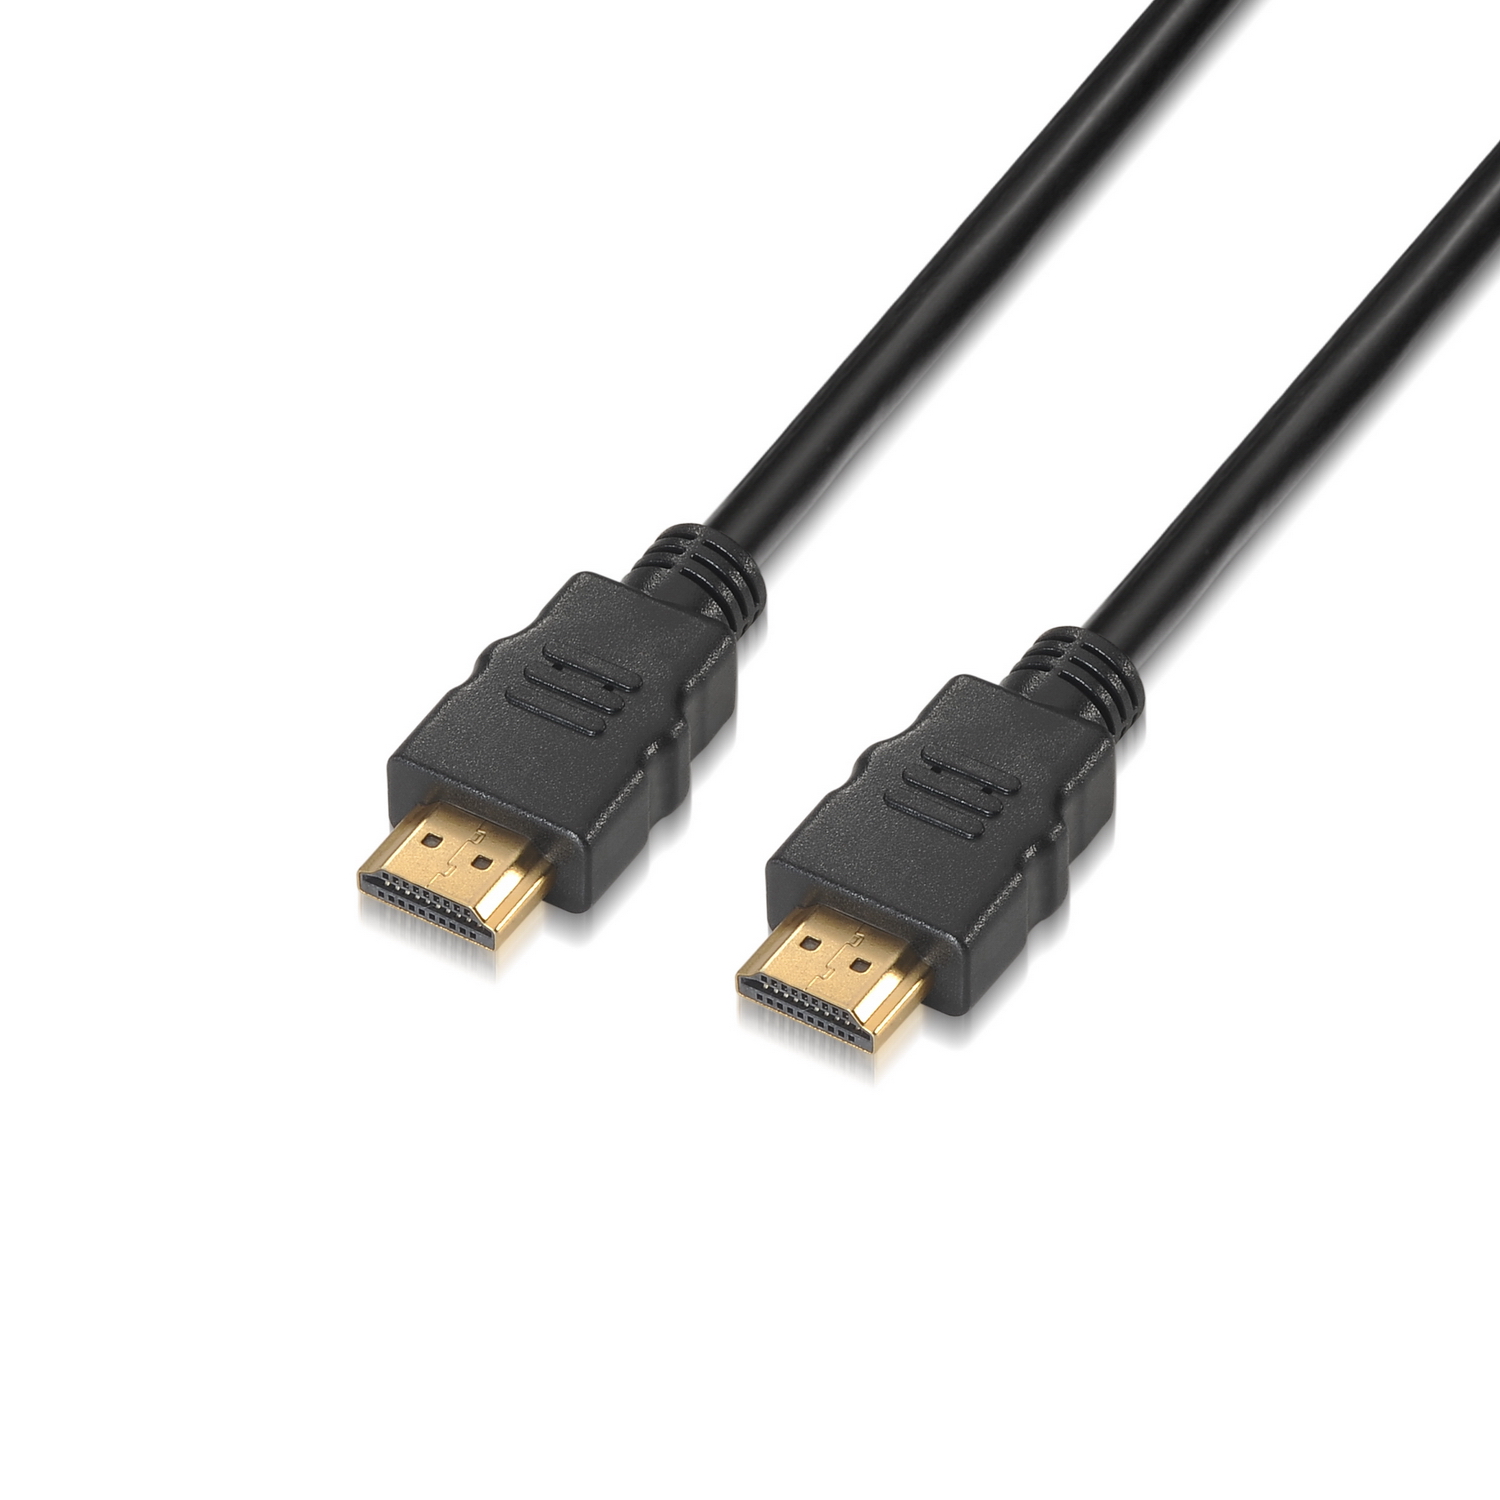  Cables HDMI cortos de 1 pie, paquete de 5 cables HDMI 4K  delgados trenzados, cable HDMI 2.0 de alta velocidad macho a macho flexible  con Ethernet, 4K @60hz HDR 3D ARC